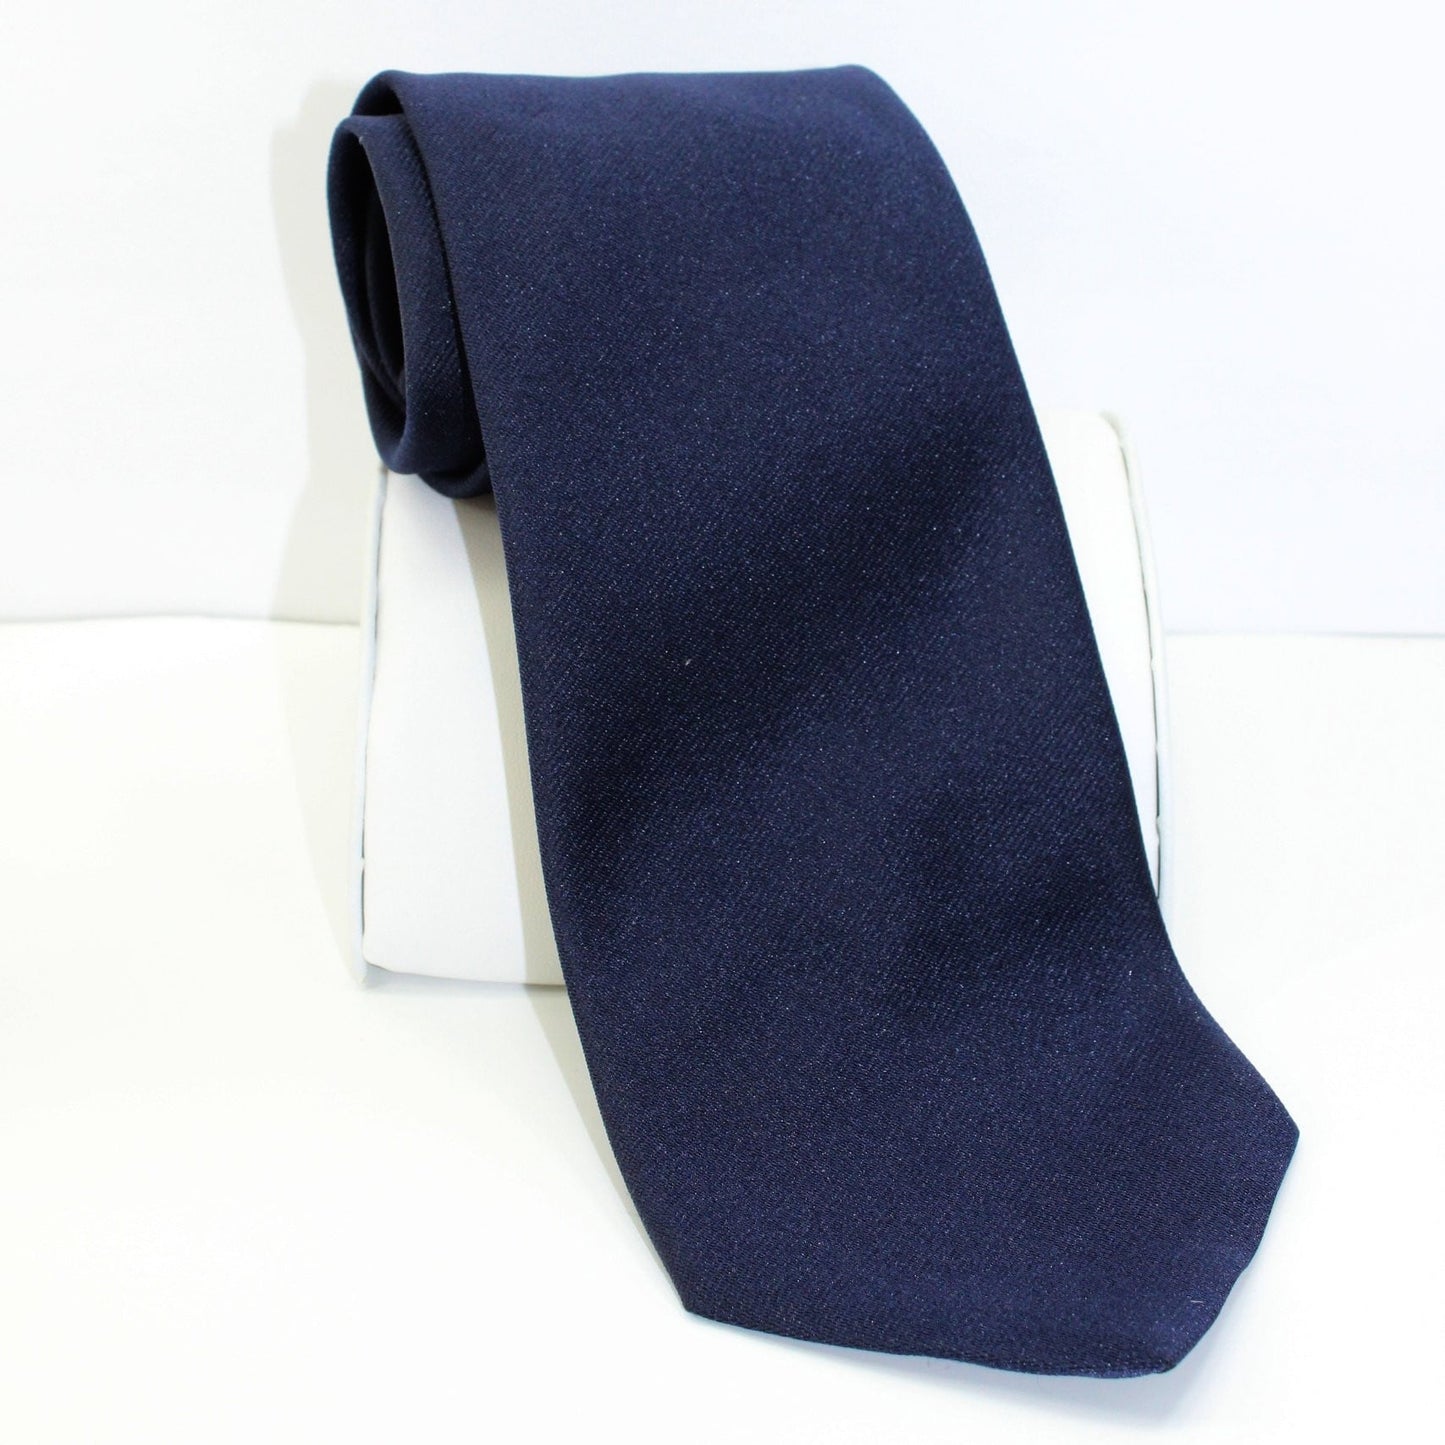 Puritan Solid Navy Dark Blue Polyester Tie - Twill Weave